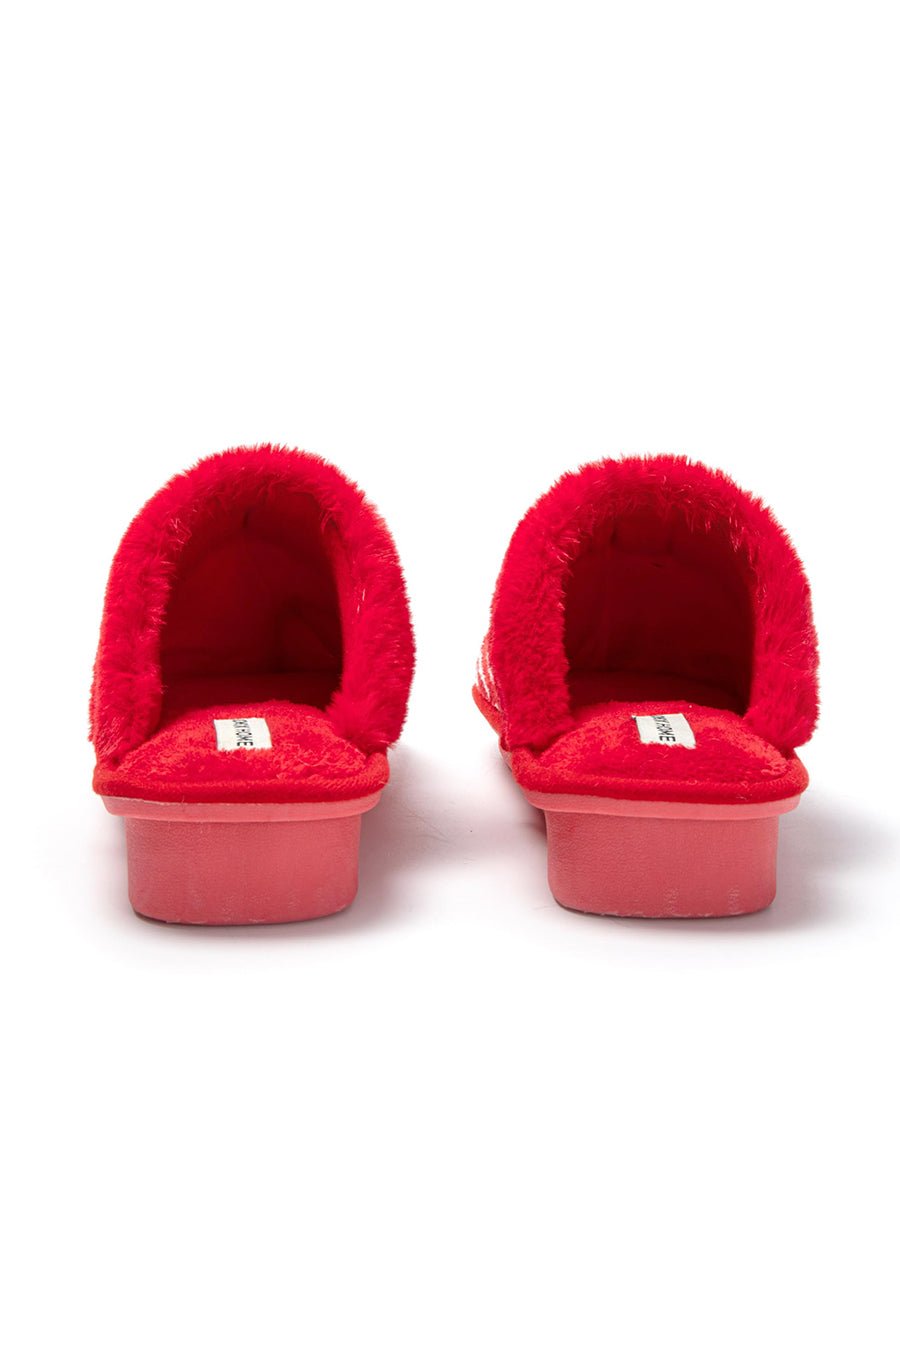 JOMIX Pantofole Donna Invernali Ciabatte Pelose Calde a Pois Tacco Zeppa Accoglienti da Casa Relax Comode MD8570